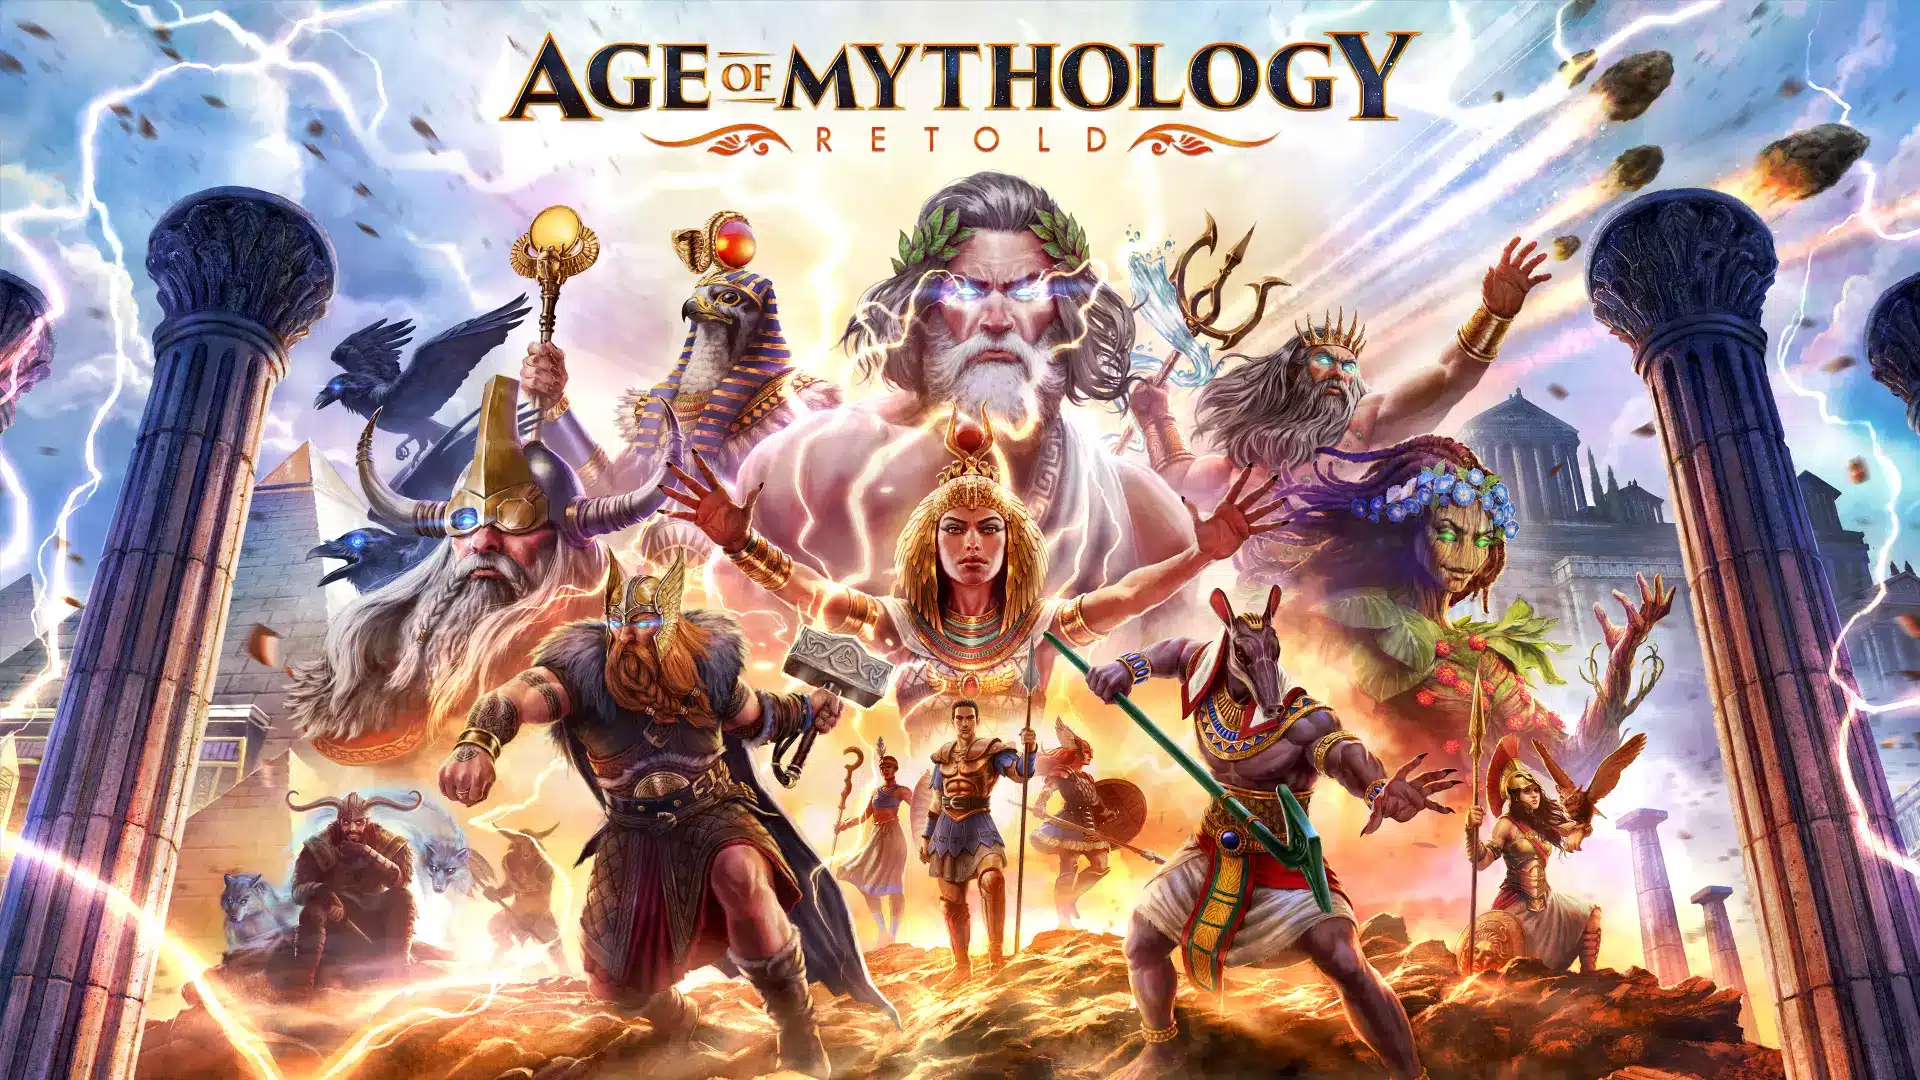 Age of mythology retold key art 2